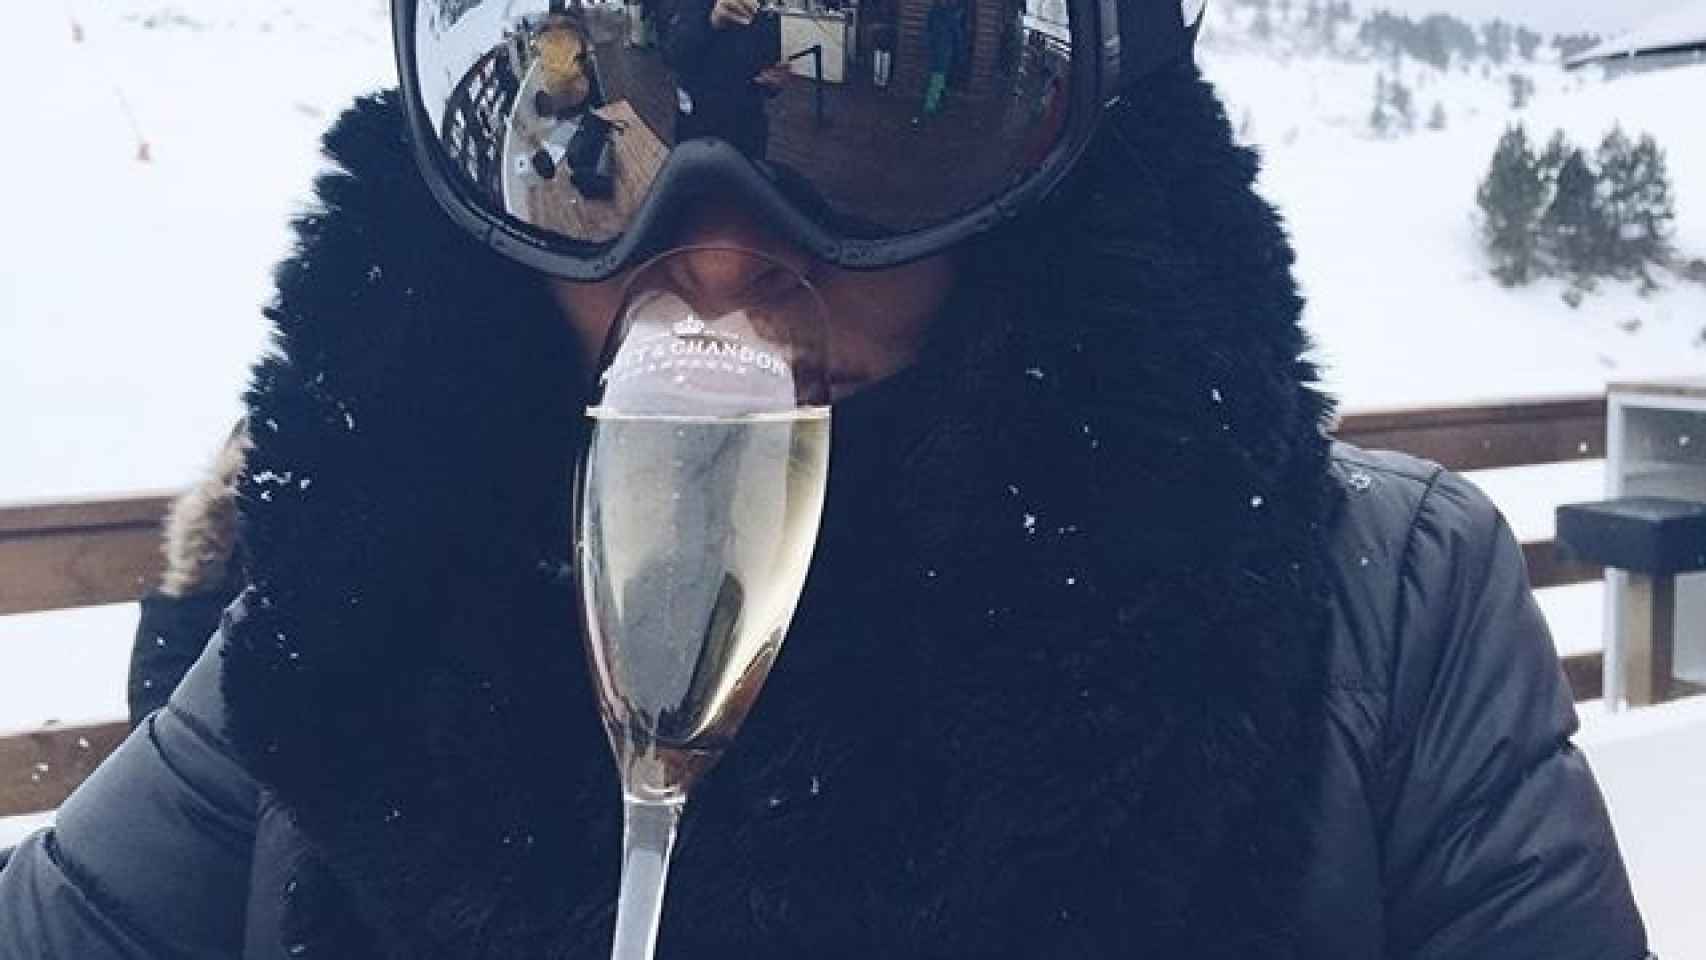 Las celebrities disfrutan de sus días de vacaciones entre la nieve y los regalos